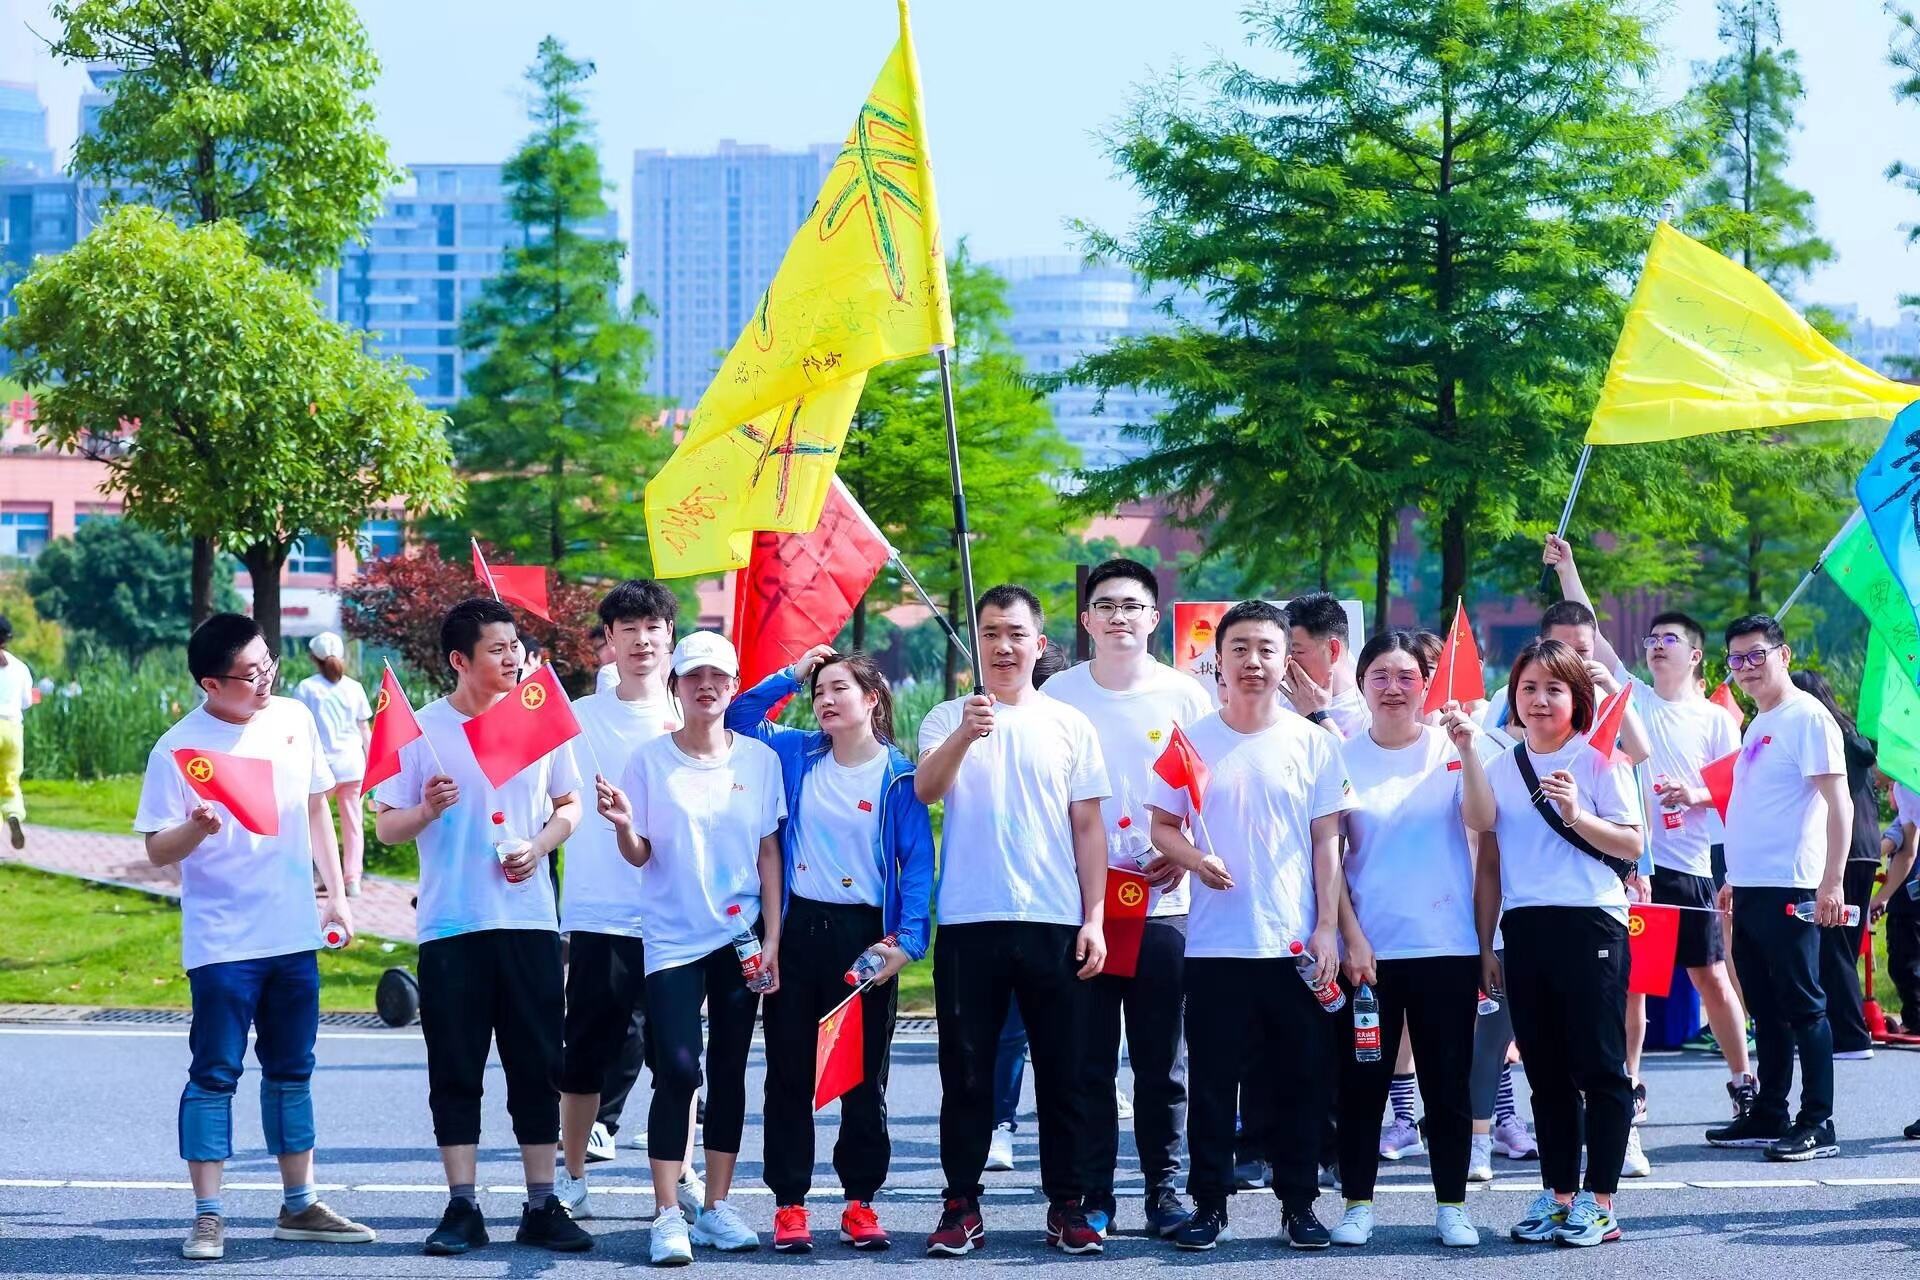 “奔跑吧·医药湘军”快乐彩跑活动日前吸引了近200名青年职工参加。